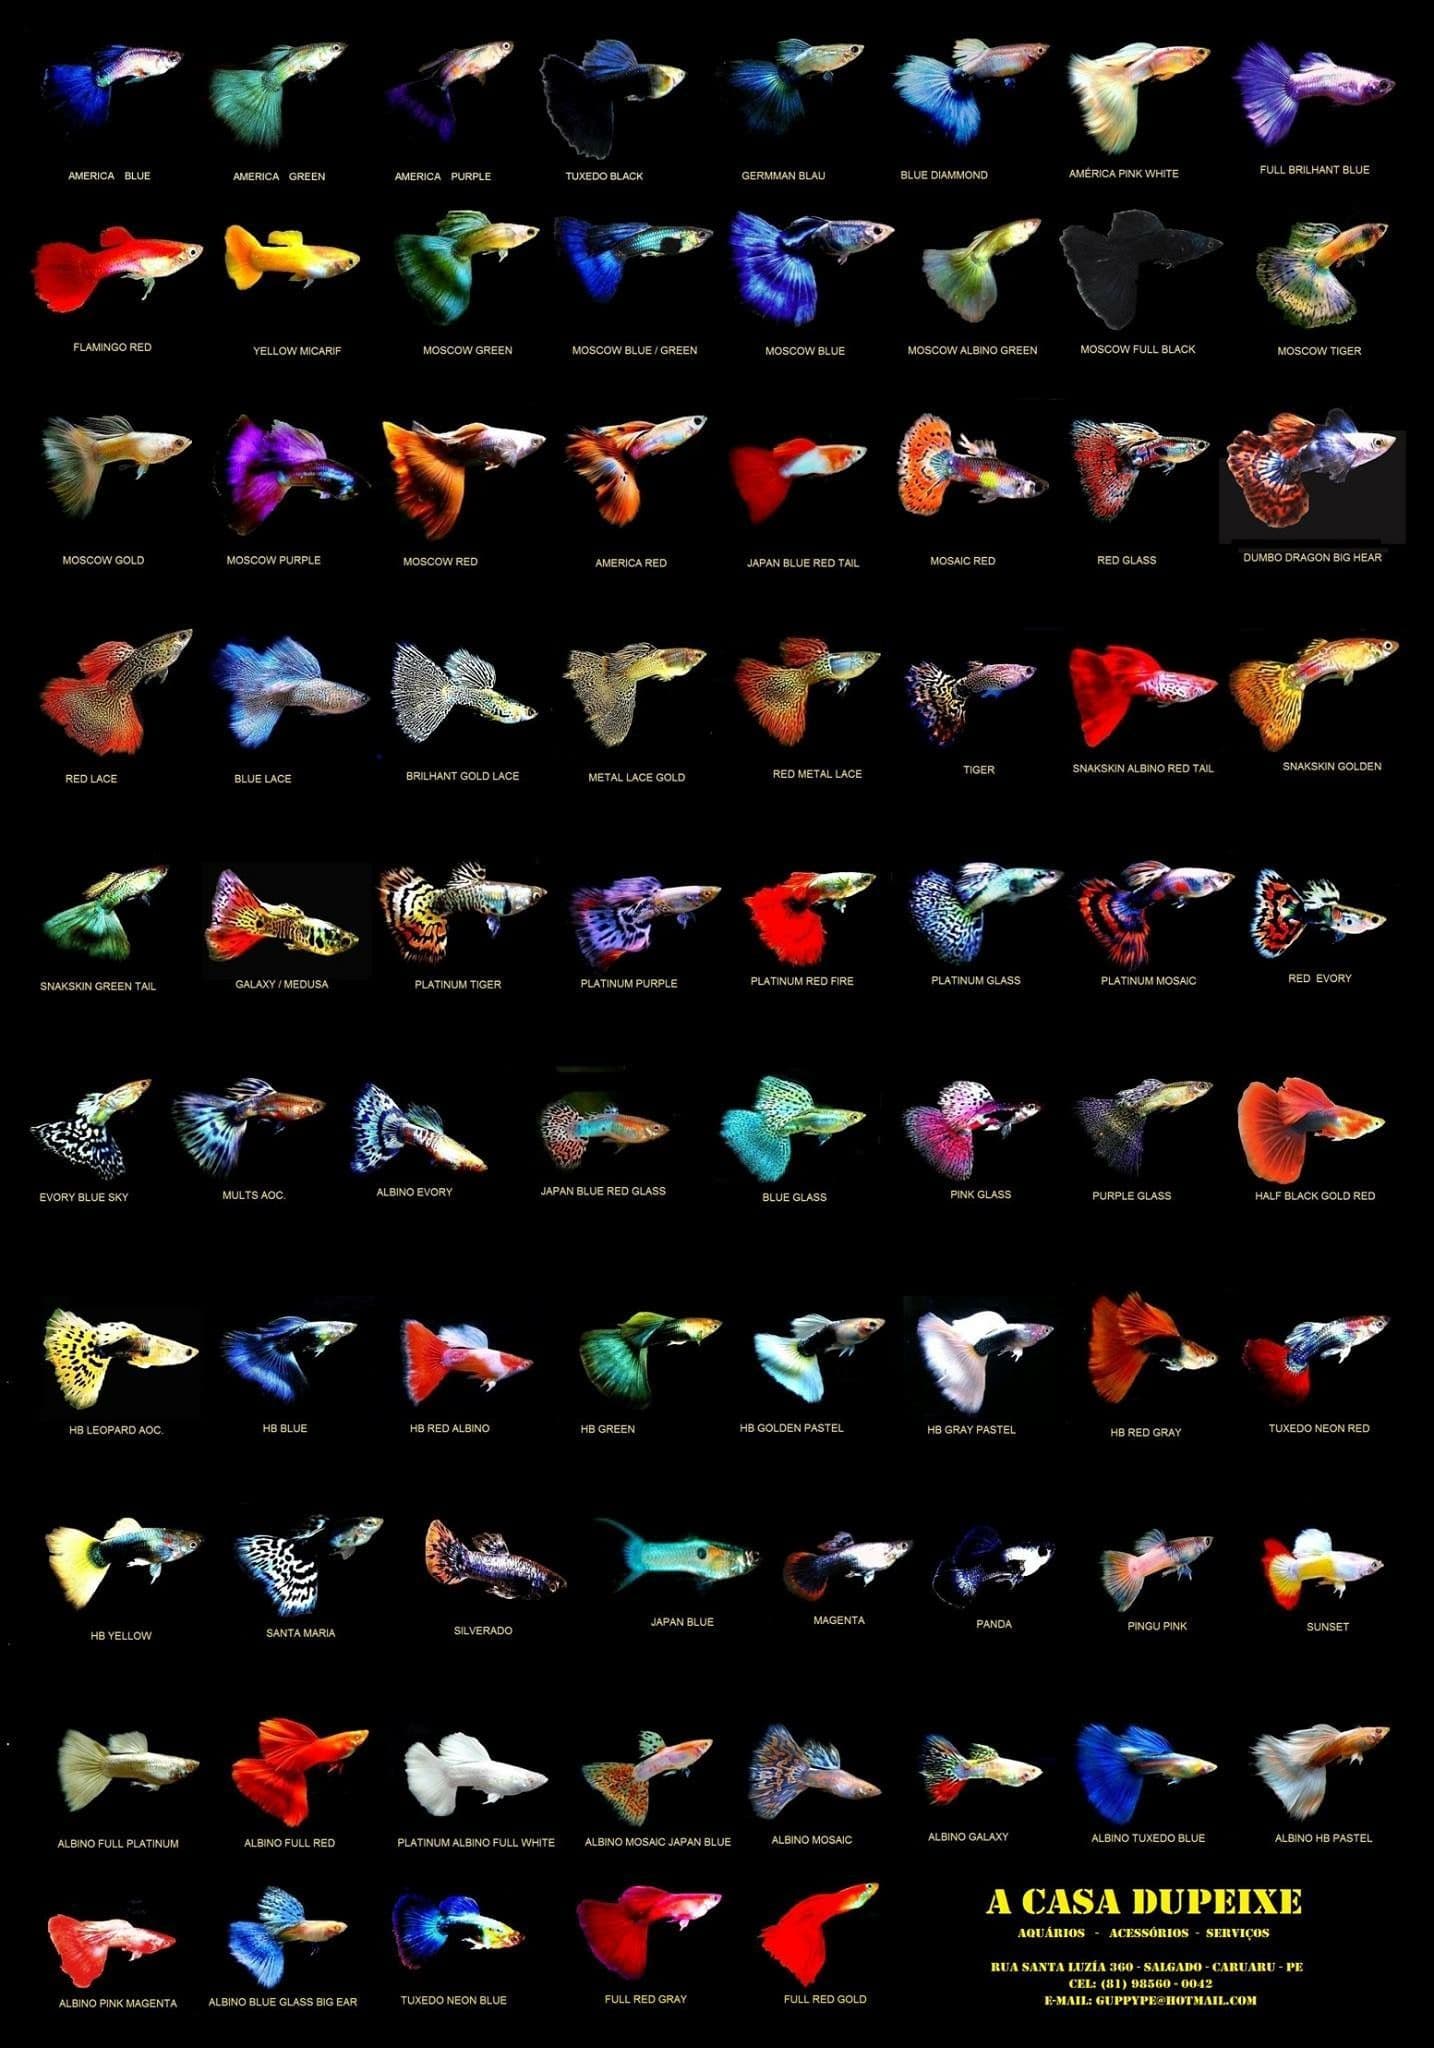 Hình ảnh về cá bảy màu, cá guppy